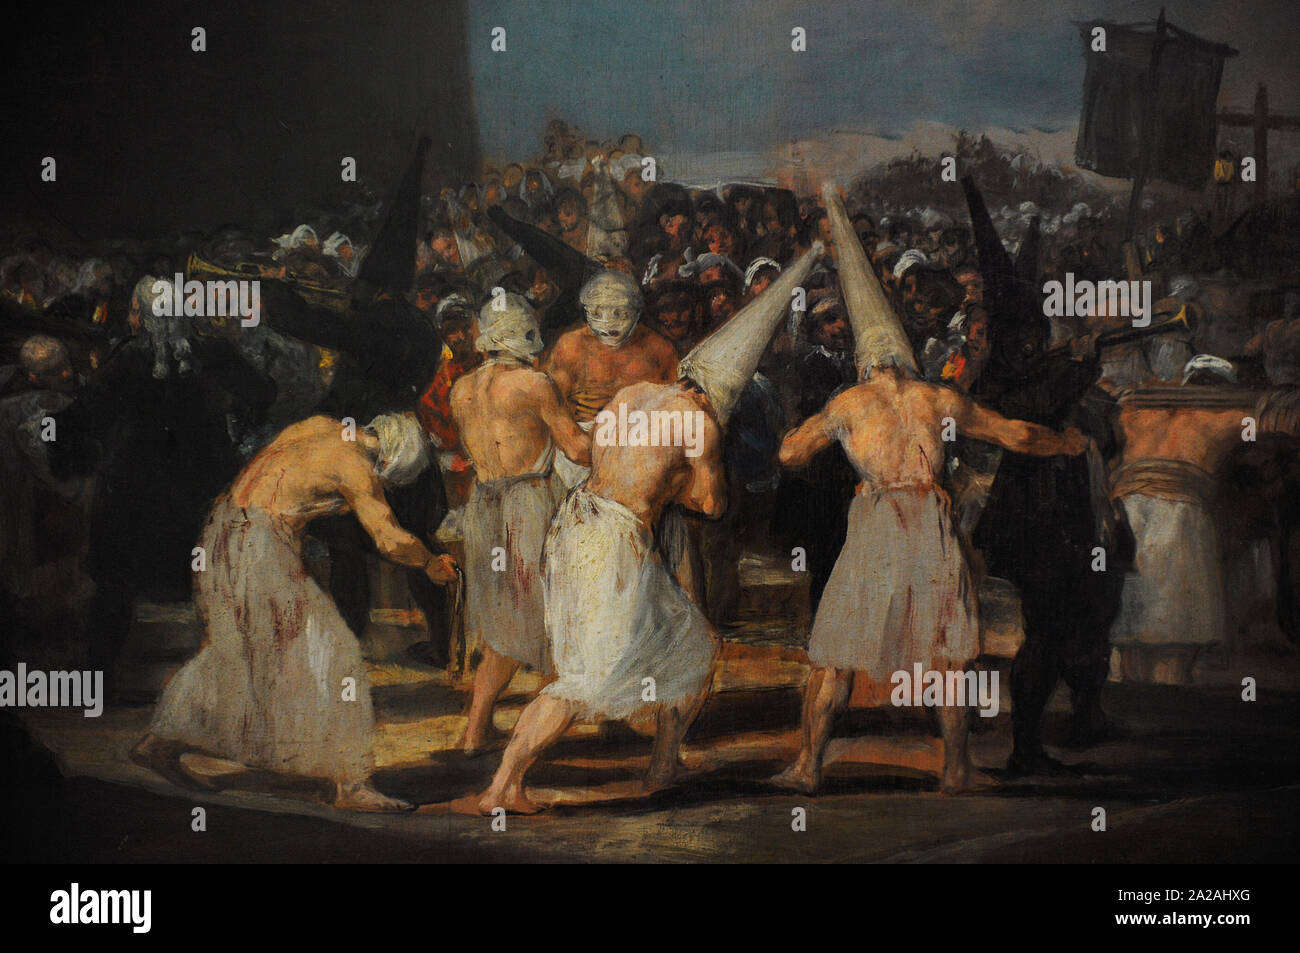 Francisco de Goya y Lucientes (1746-1828). Spanischer Maler. Eine Prozession der Flagellanten, 1808-1812. Detail. San Fernando Königliche Akademie der Schönen Künste in Madrid. Spanien. Stockfoto